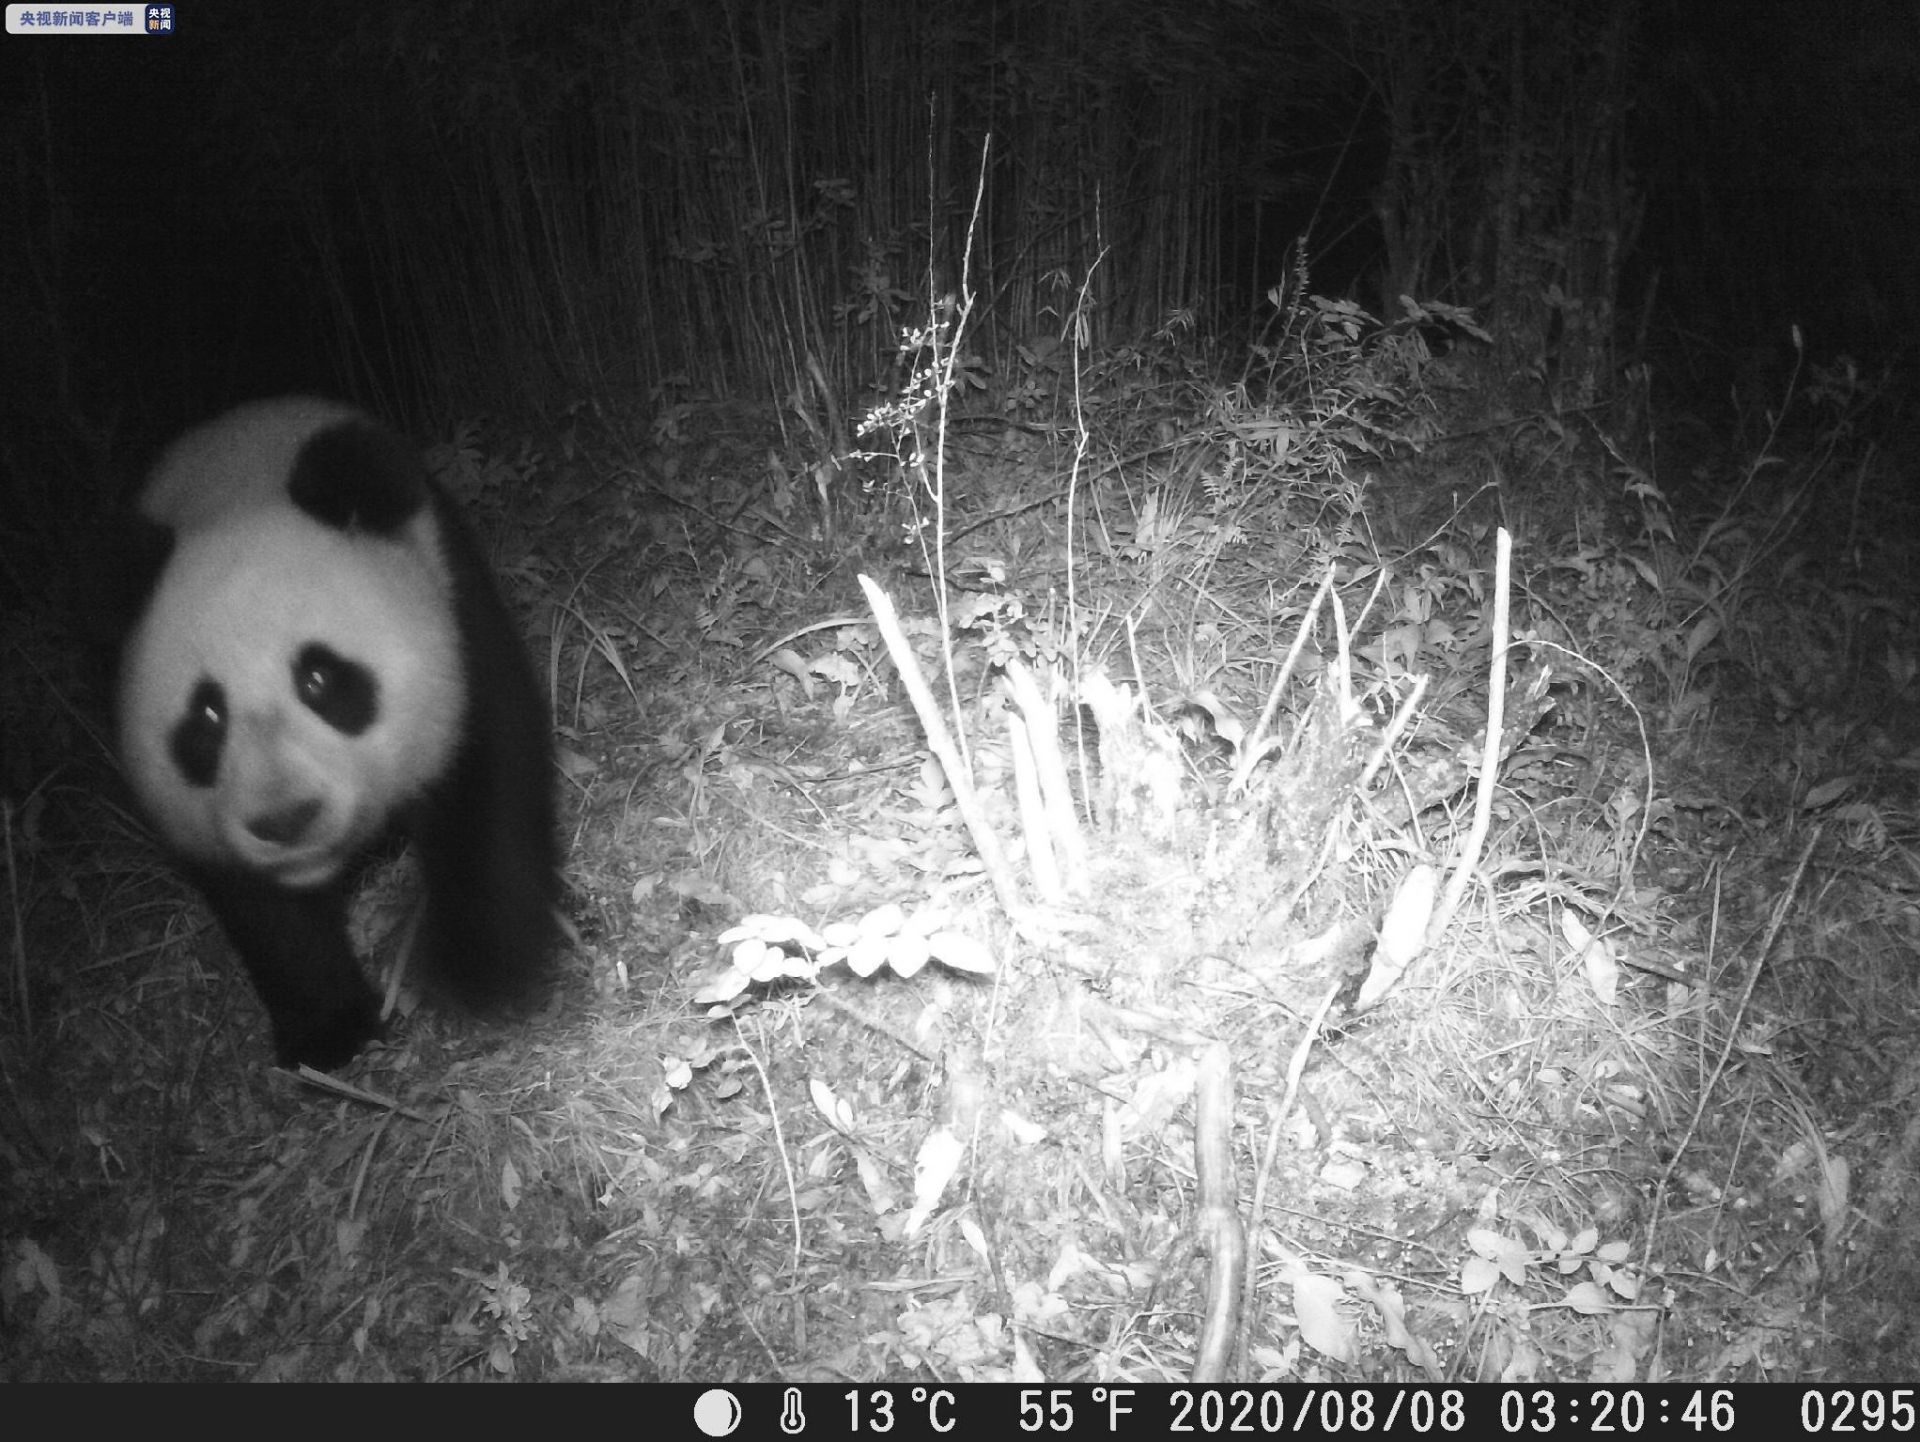 四川土地岭大熊猫国家公园首次通过红外相机拍到大熊猫身影